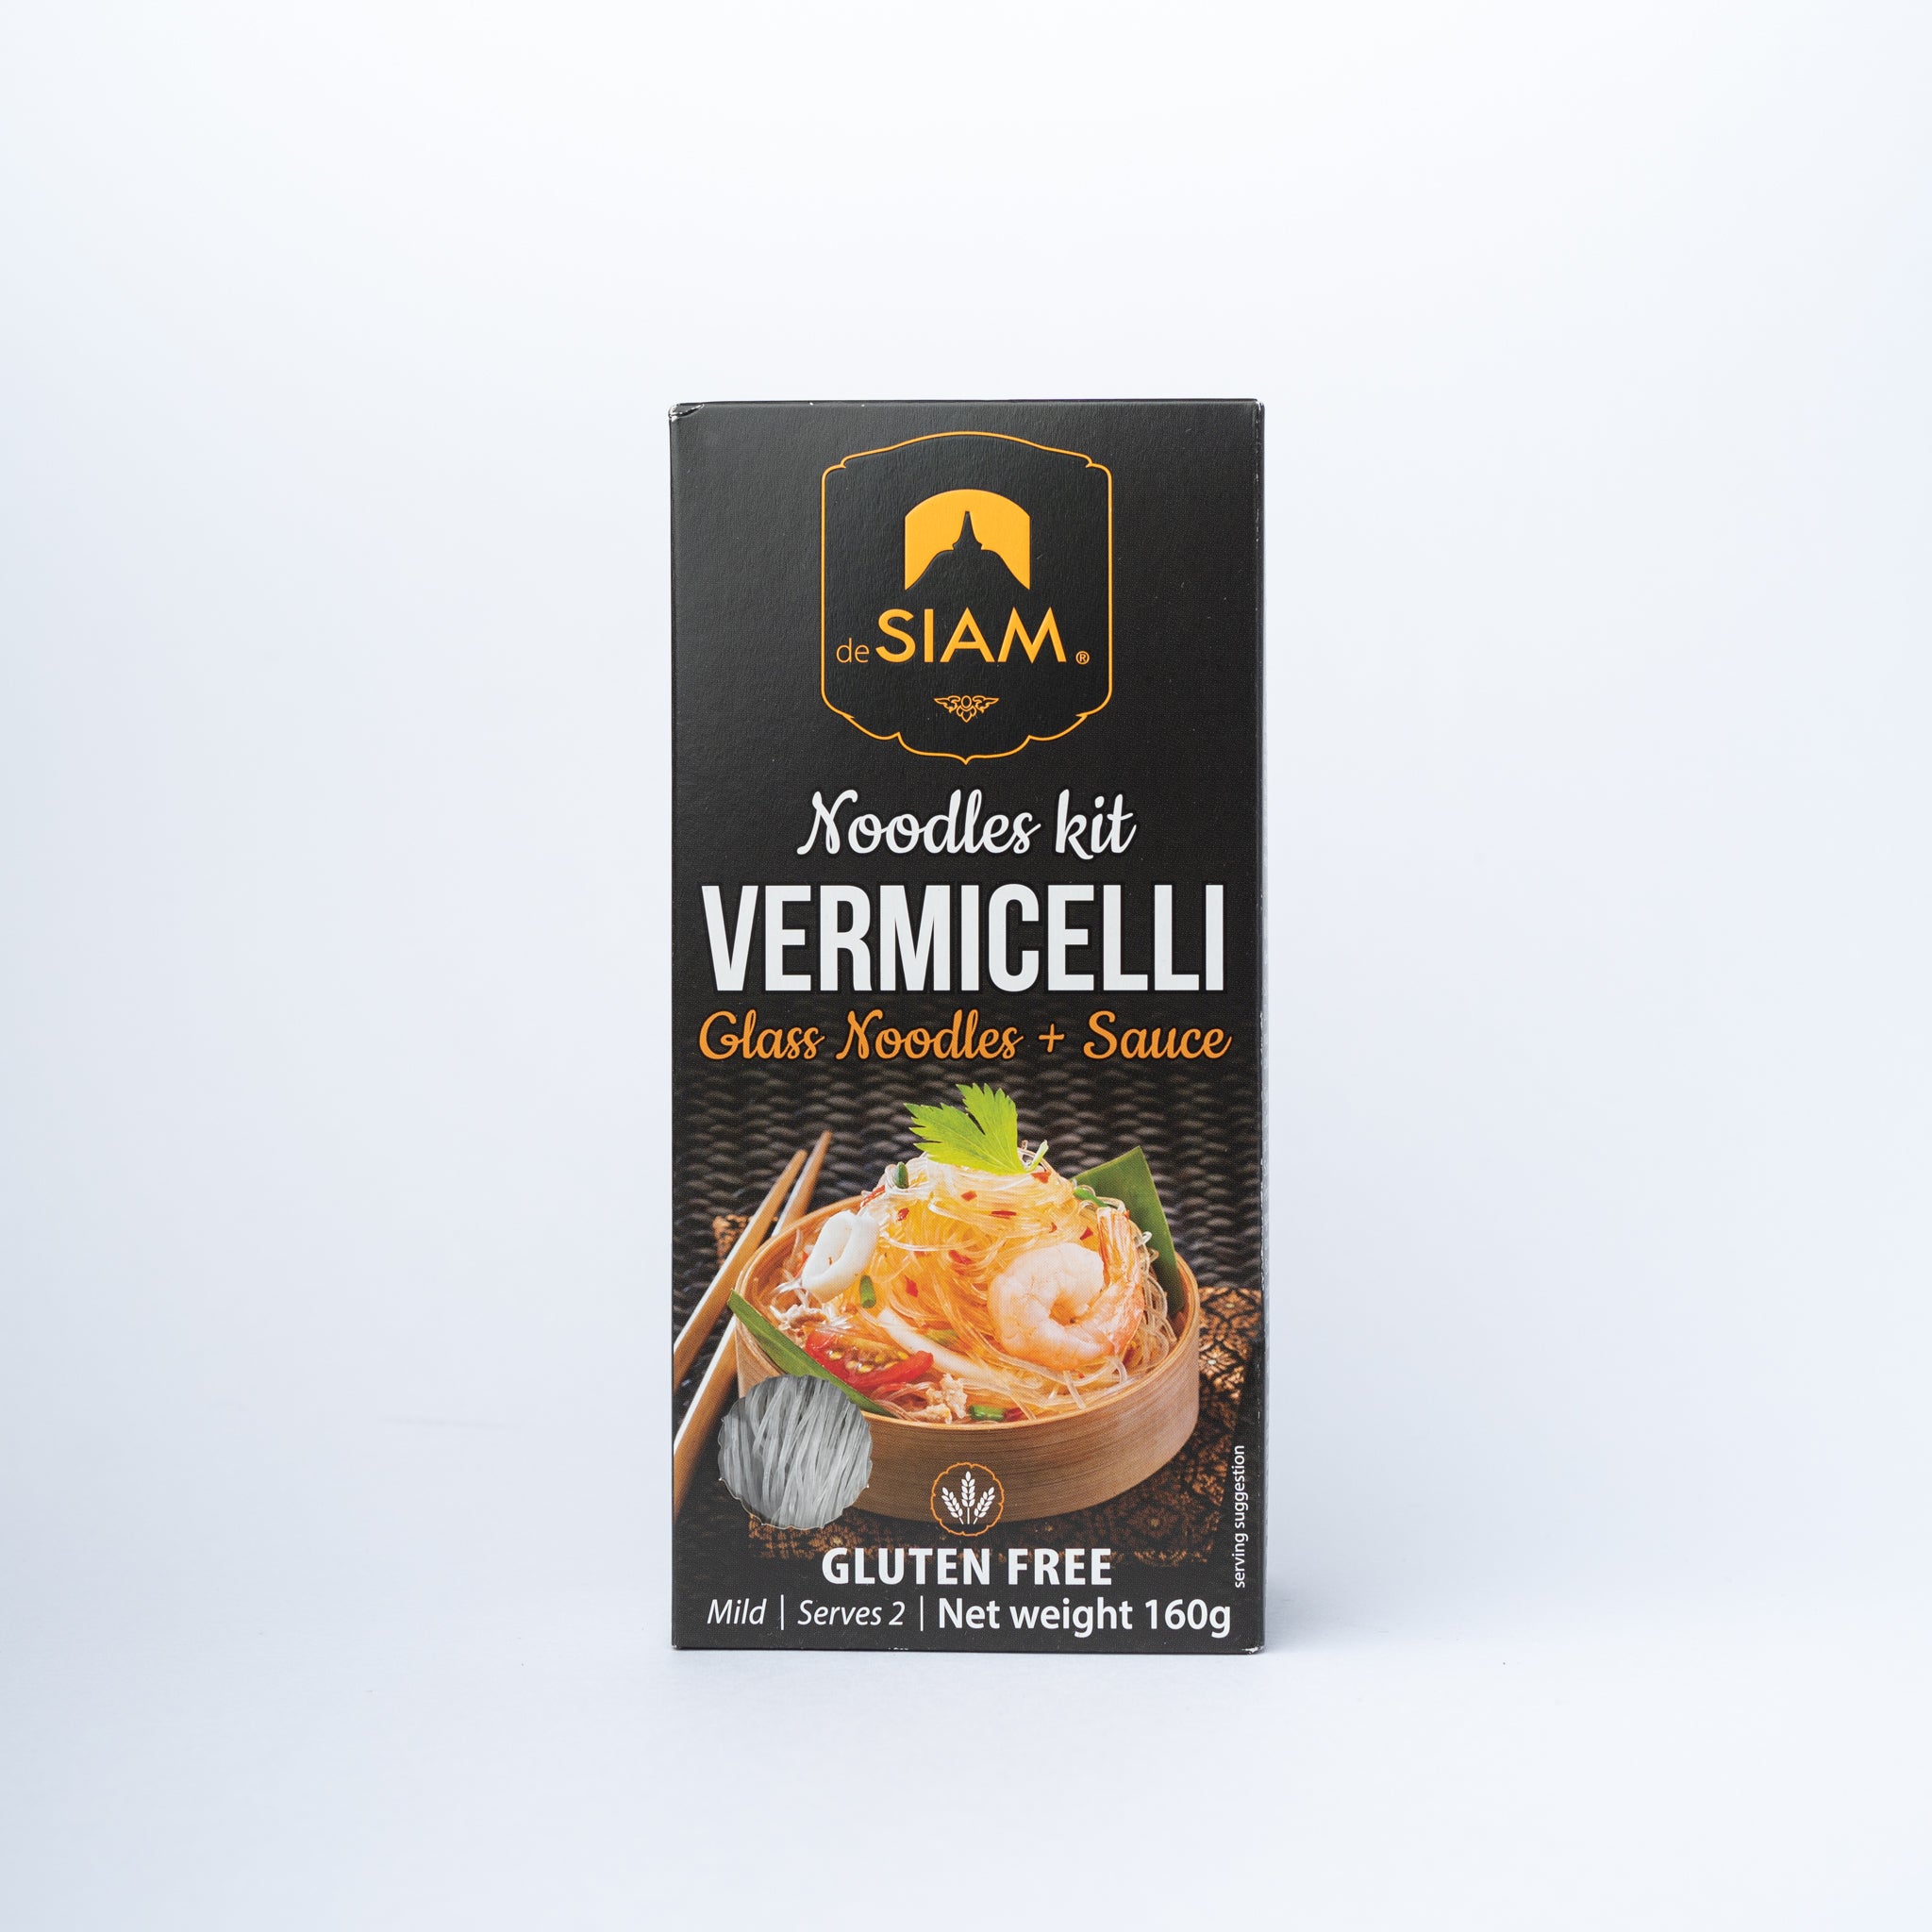 DeSIAM Vermicelli noodles kit 160g.